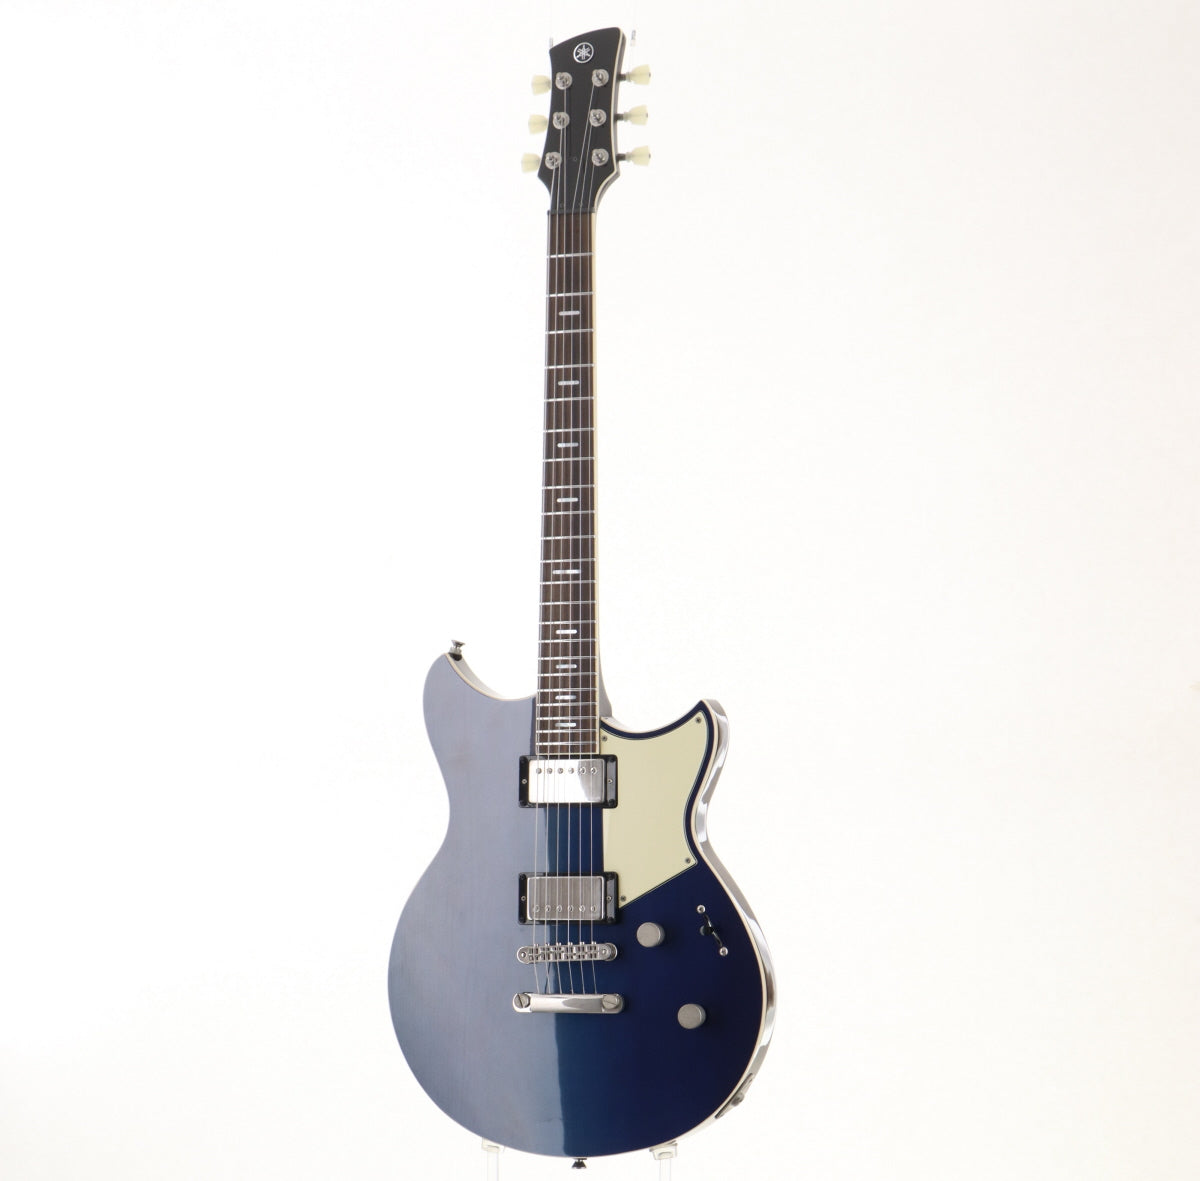 [SN IIM017E] USED Yamaha / RSP20 REVSTAR Moonlight Blue [03]